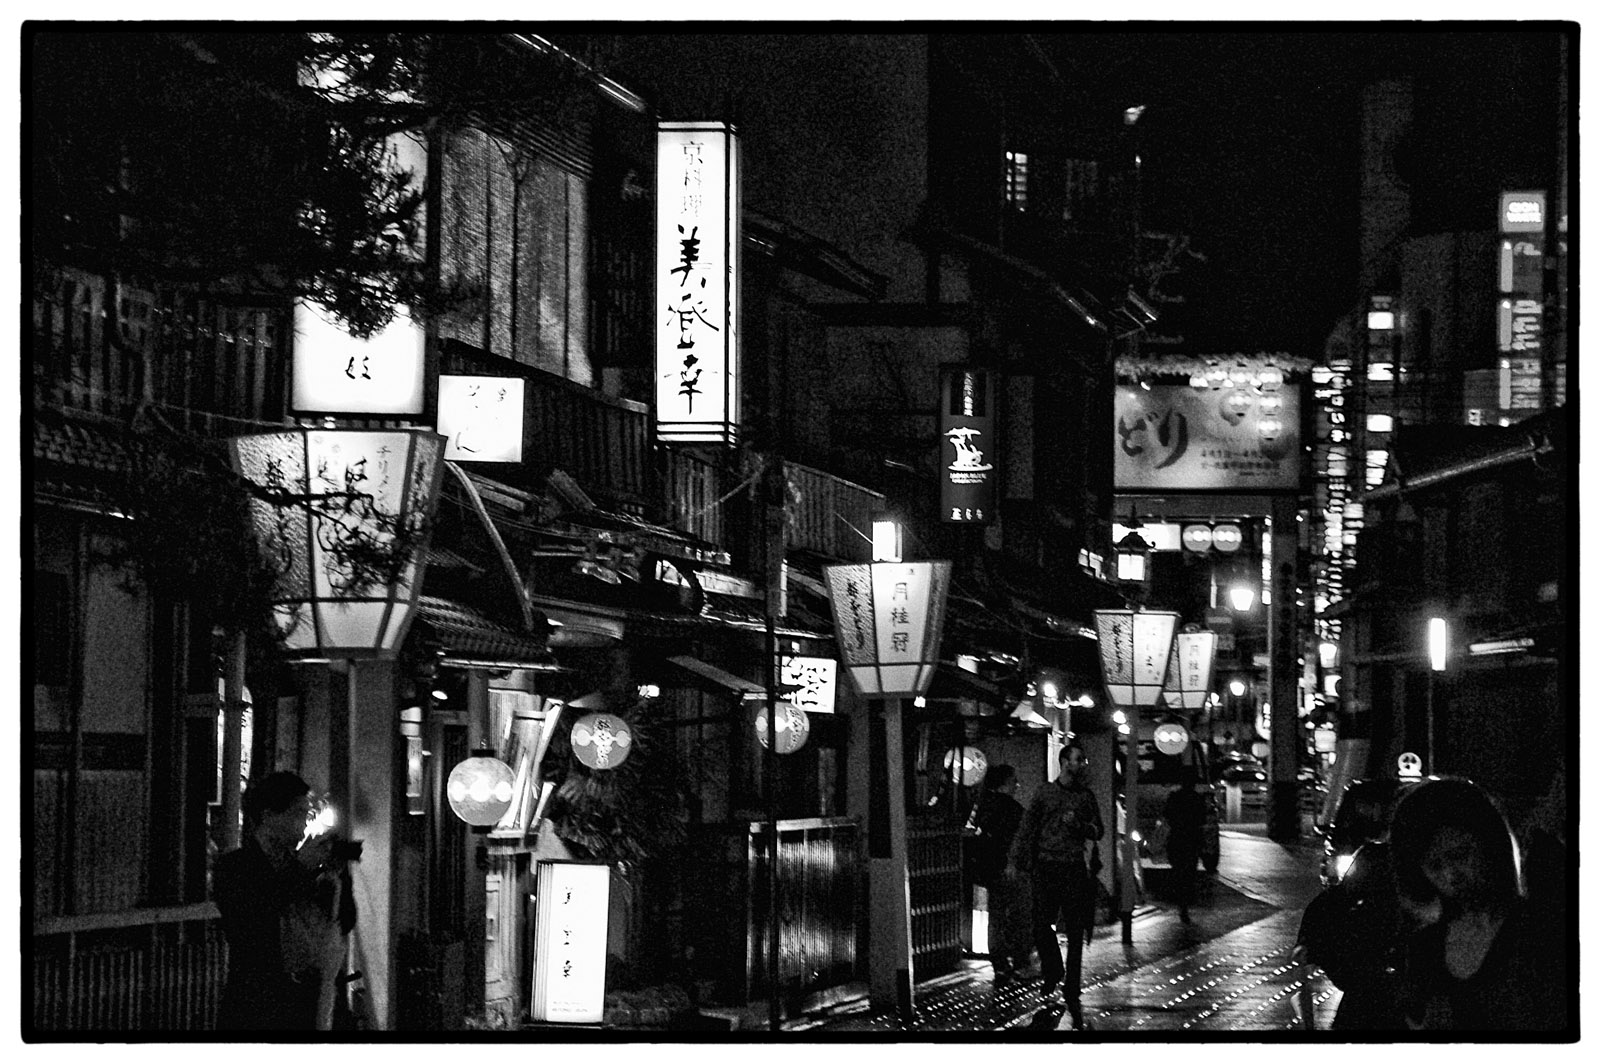 Kyoto at night, Malcolm Beetham